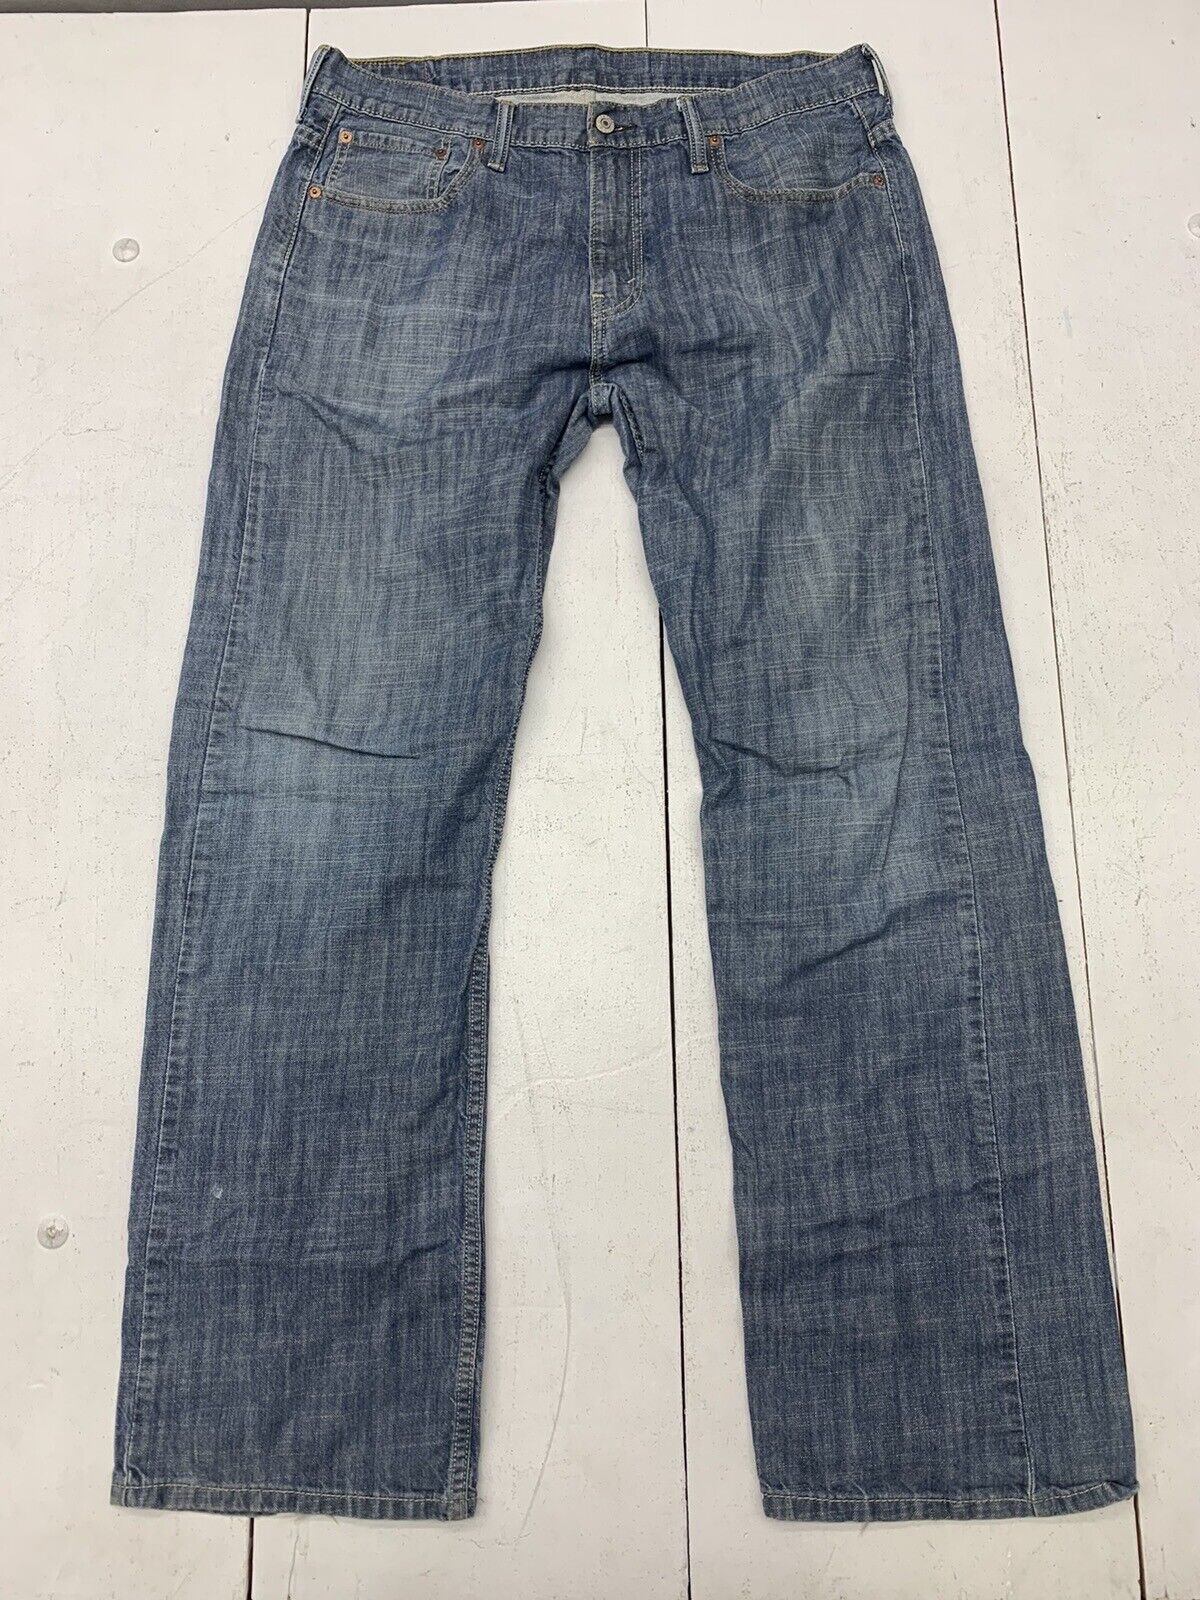 Levis Mens 569 Blue Denim Jeans Size 34/34